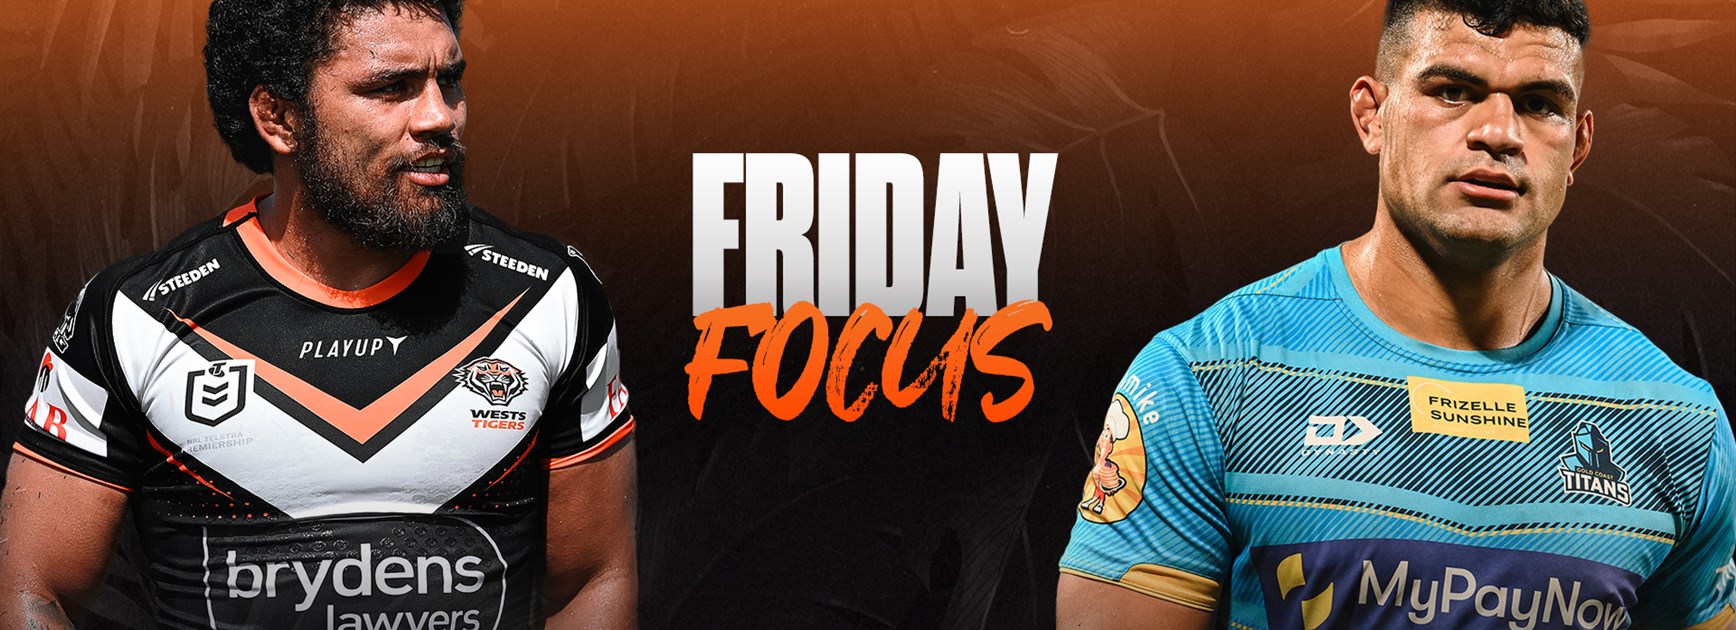 Friday Focus: Round 1 vs Titans